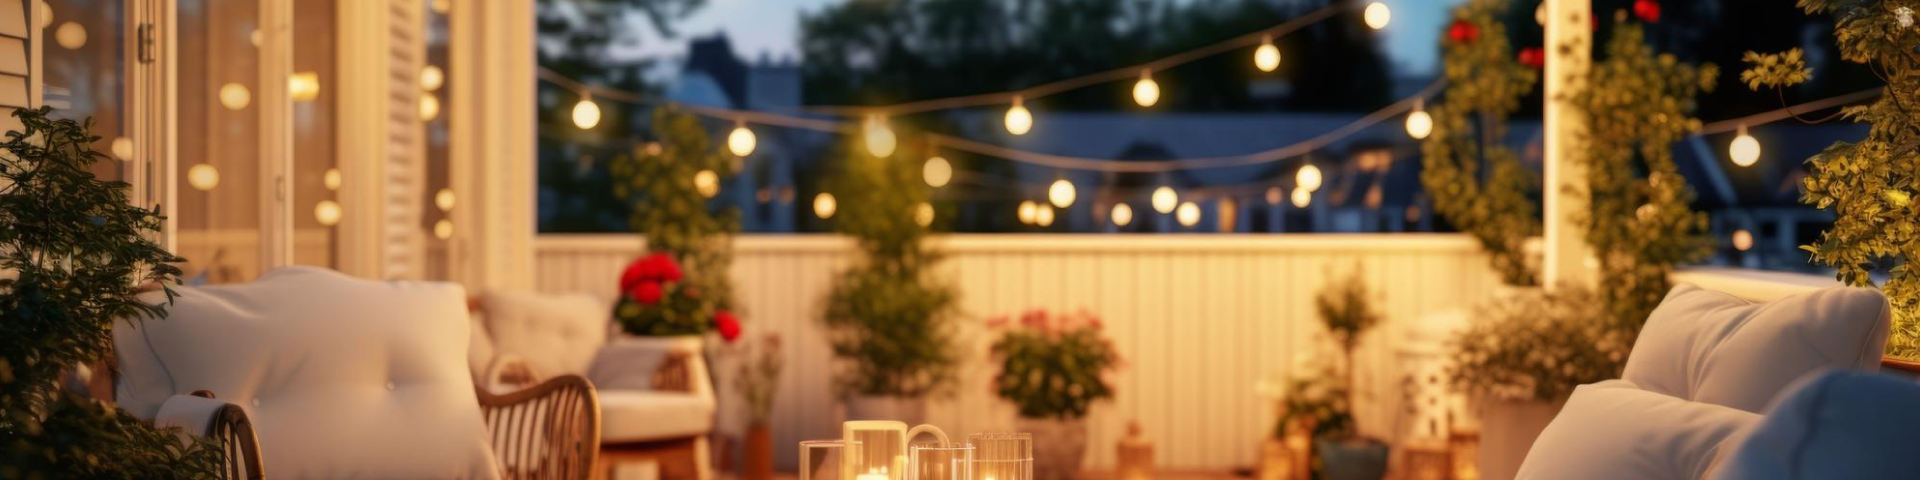 Cómo elegir la iluminación exterior perfecta para tu jardín